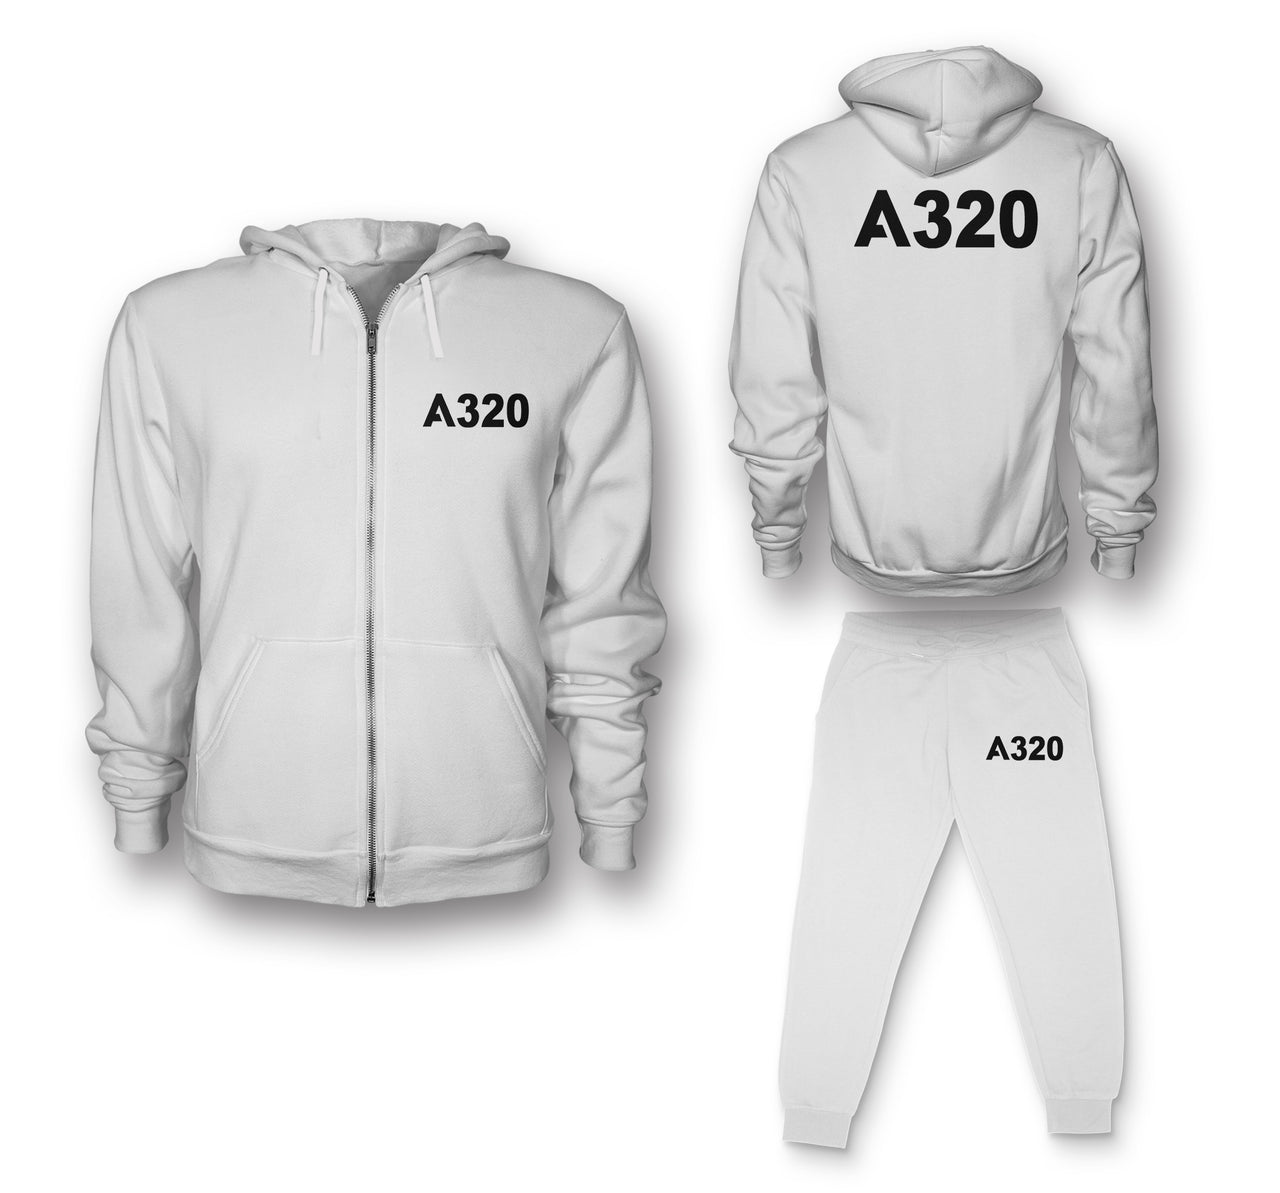 A320 Flat Text Designed Zipped Hoodies & Sweatpants Set